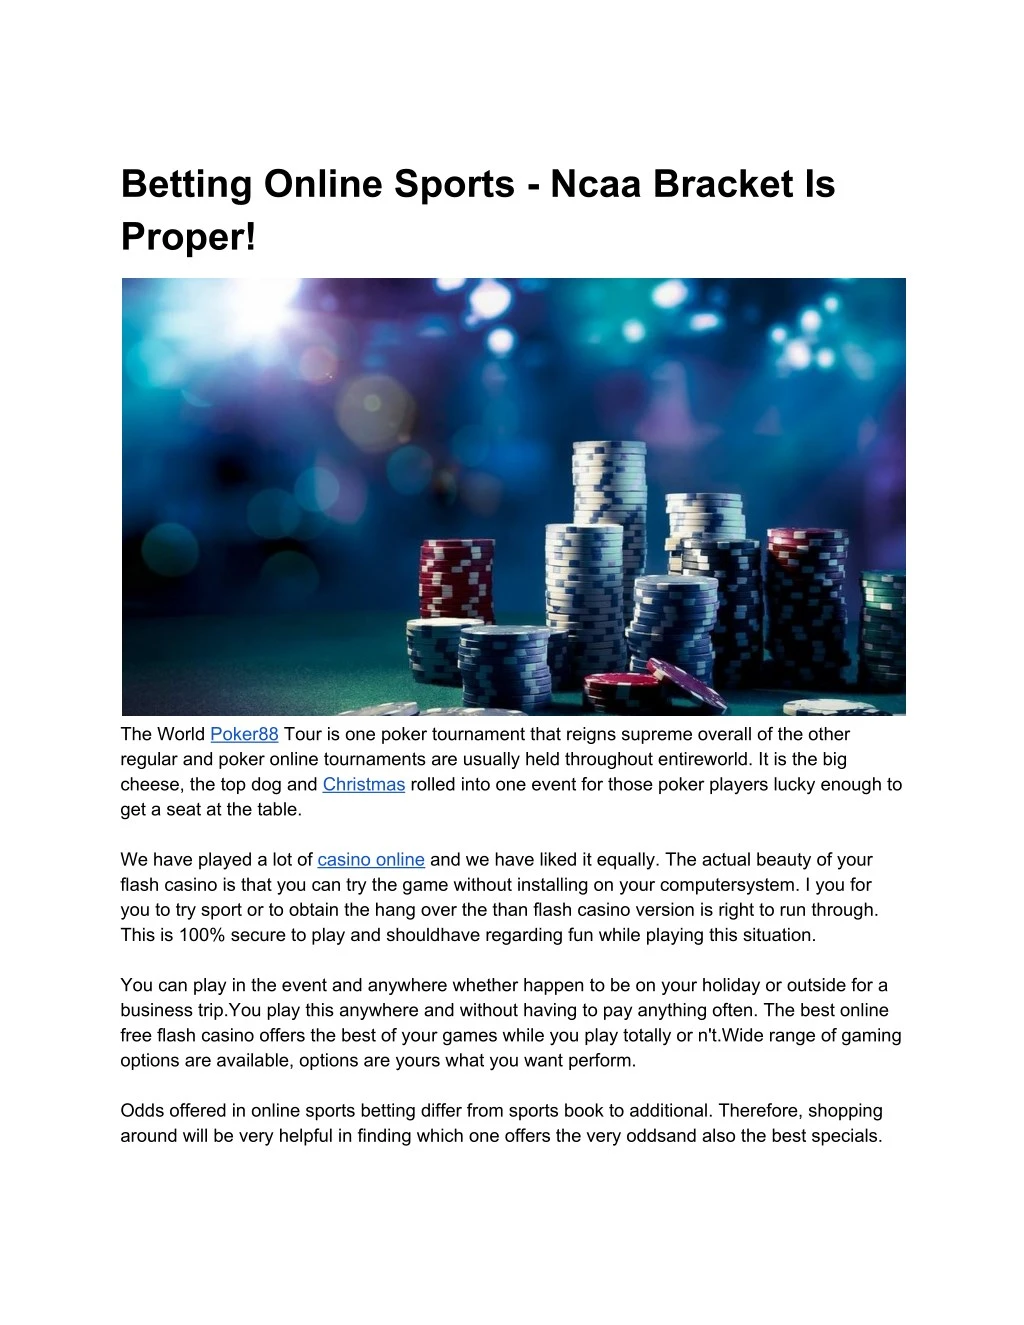 betting online sports ncaa bracket is proper